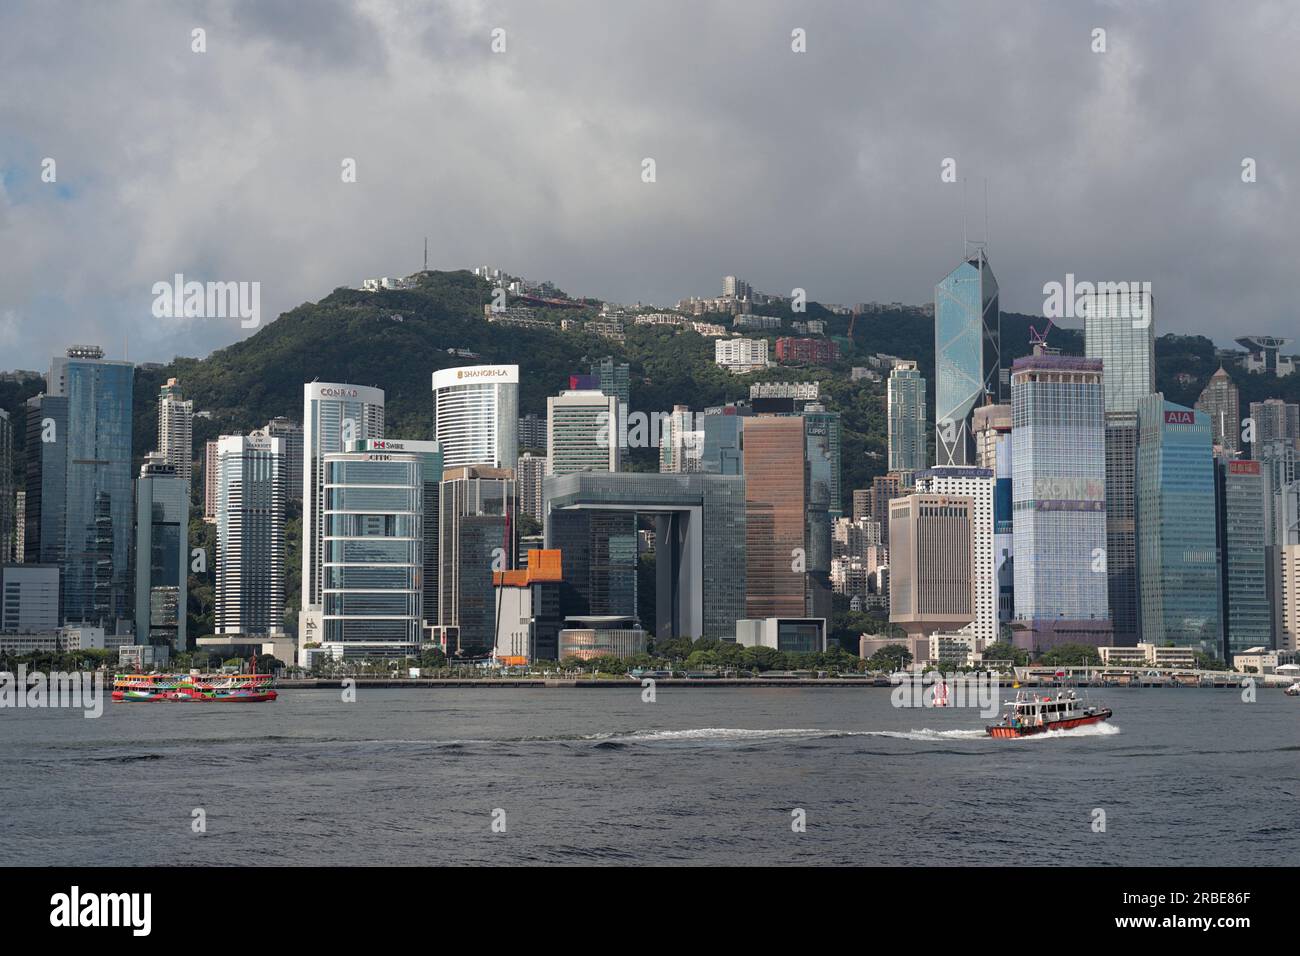 Vista de las oficinas centrales del gobierno de Hong Kong en Wanchai, y del hotel Conrad, antiguo HMS Tamar, visto desde Tsim Sha Tsui, Kowloon, Hong Kong, China. Foto de stock